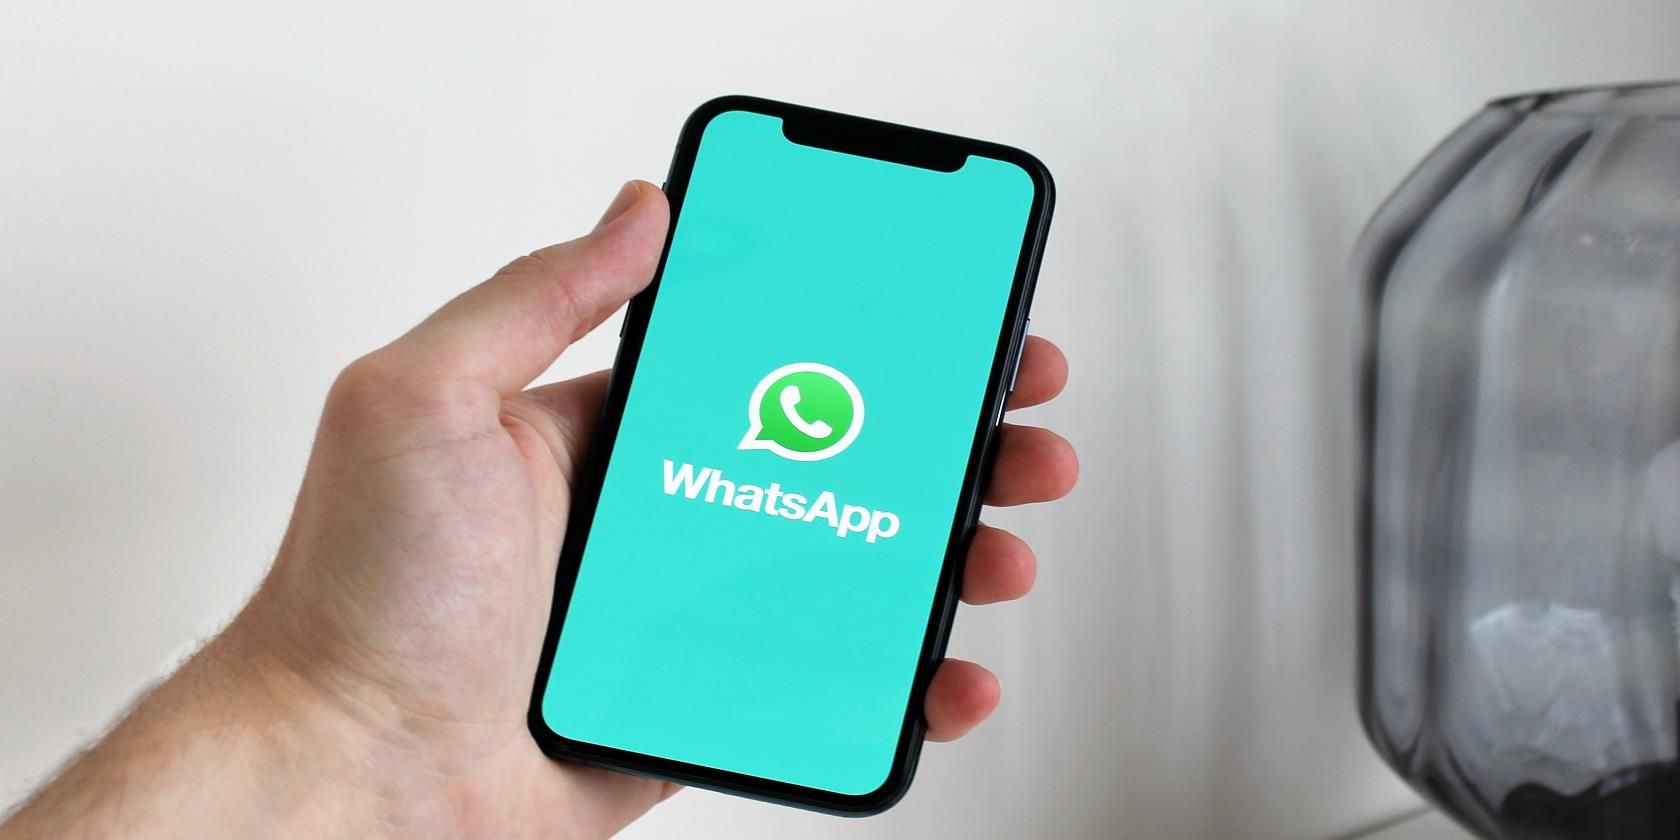 WhatsApp-on-phone-screen